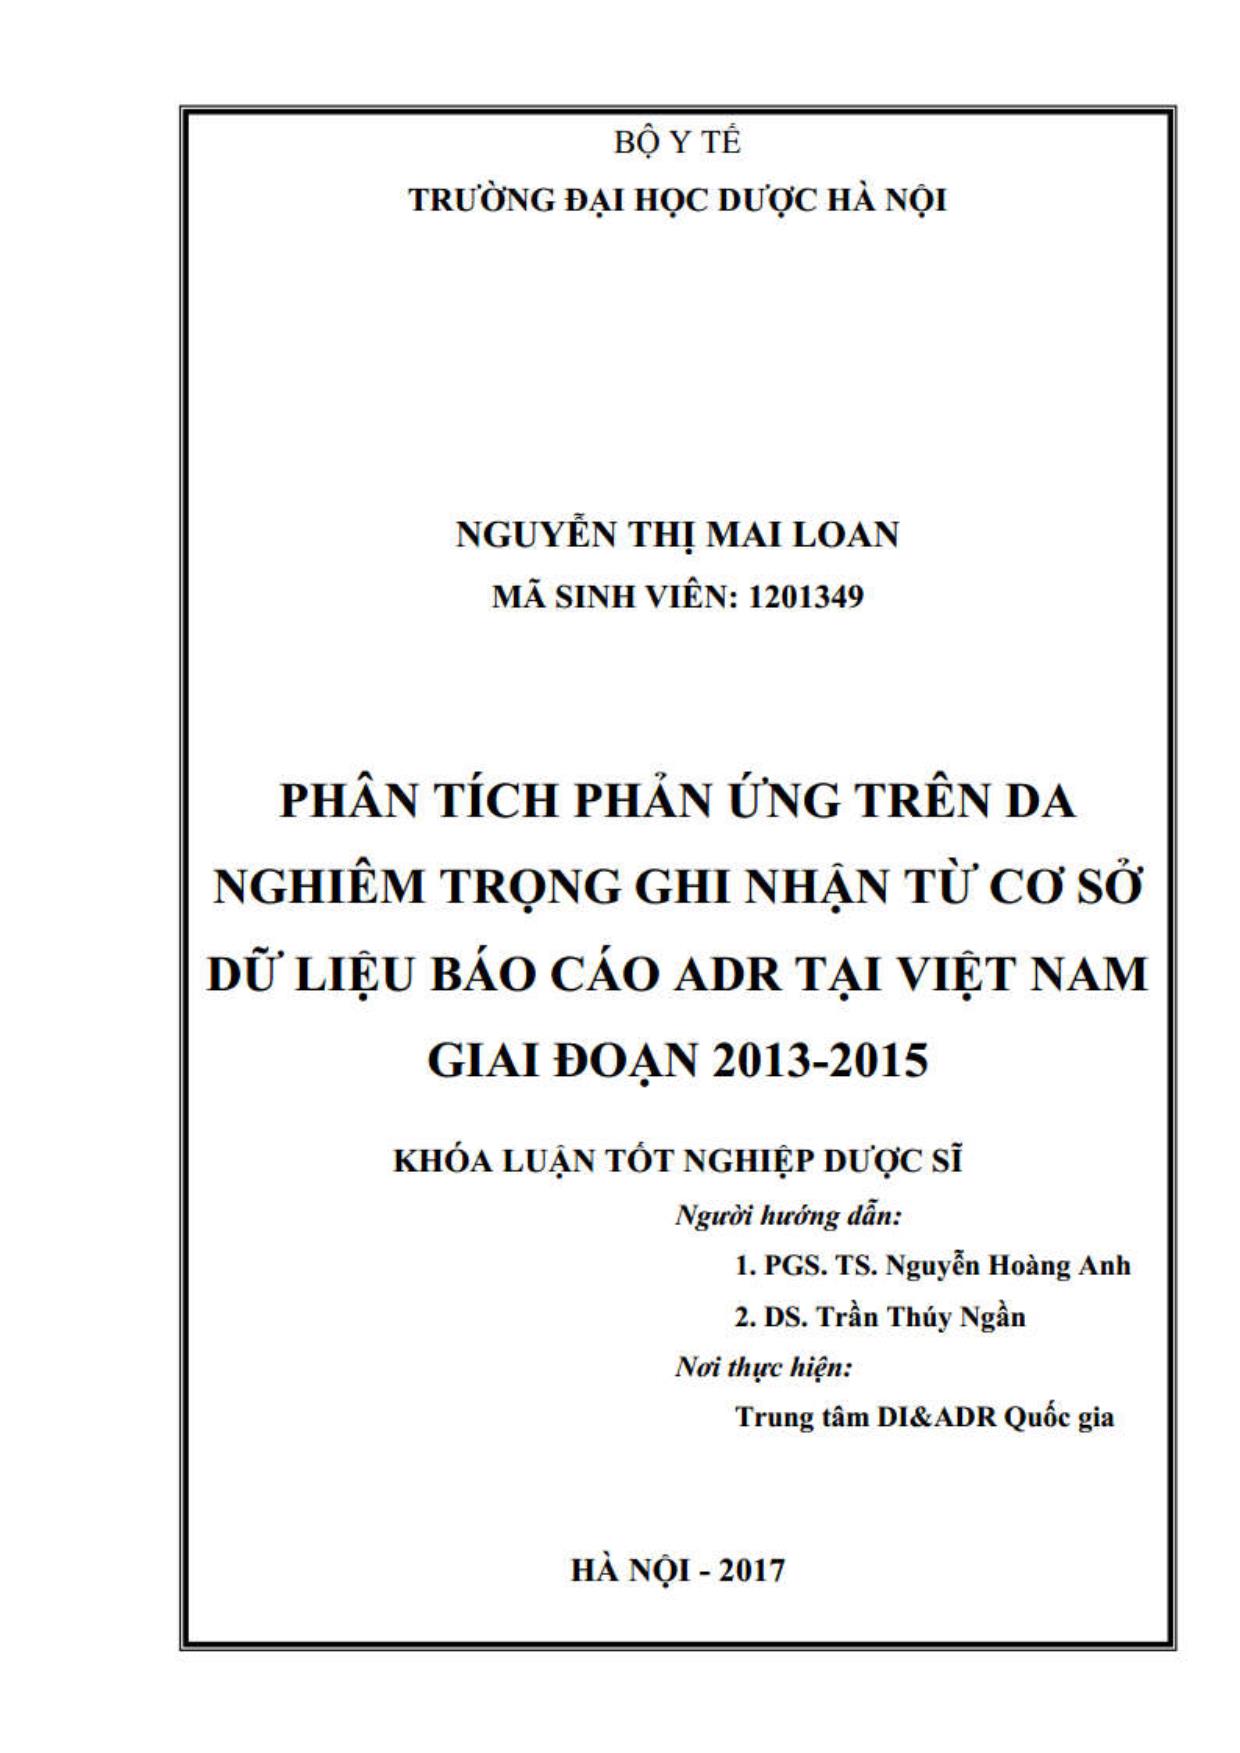 Phân tích phản ứng trên da nghiêm trọng ghi nhận từ cơ sở dữ liệu Báo cáo ADR tại Việt Nam giai đoạn 2013 - 2015 trang 2